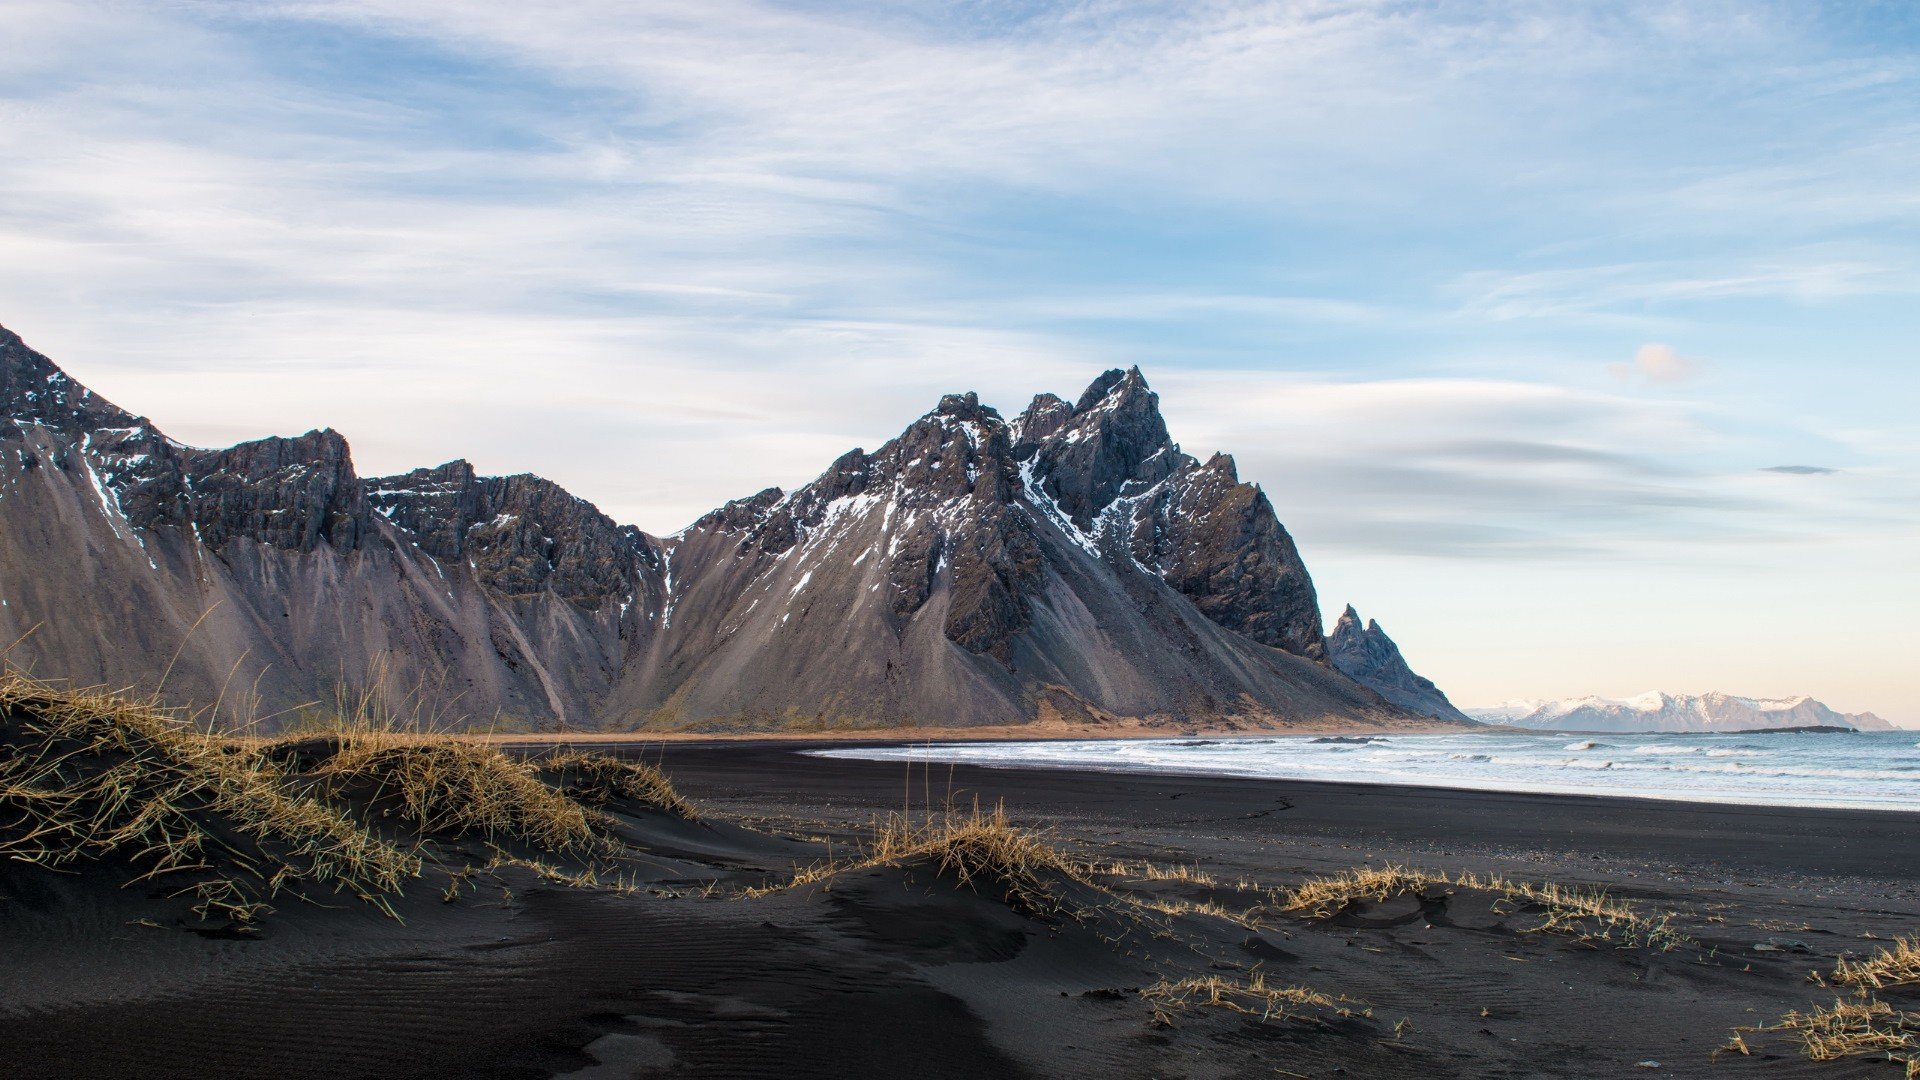 Cảnh quan Iceland có đầy đủ từ ngọn núi đến đại dương, mang lại một vẻ đẹp tựa như tranh vẽ. Qua những hình ảnh đẹp, những khung cảnh độc đáo này sẽ khiến bạn cảm thấy bị mê hoặc và khao khát muốn khám phá thêm.